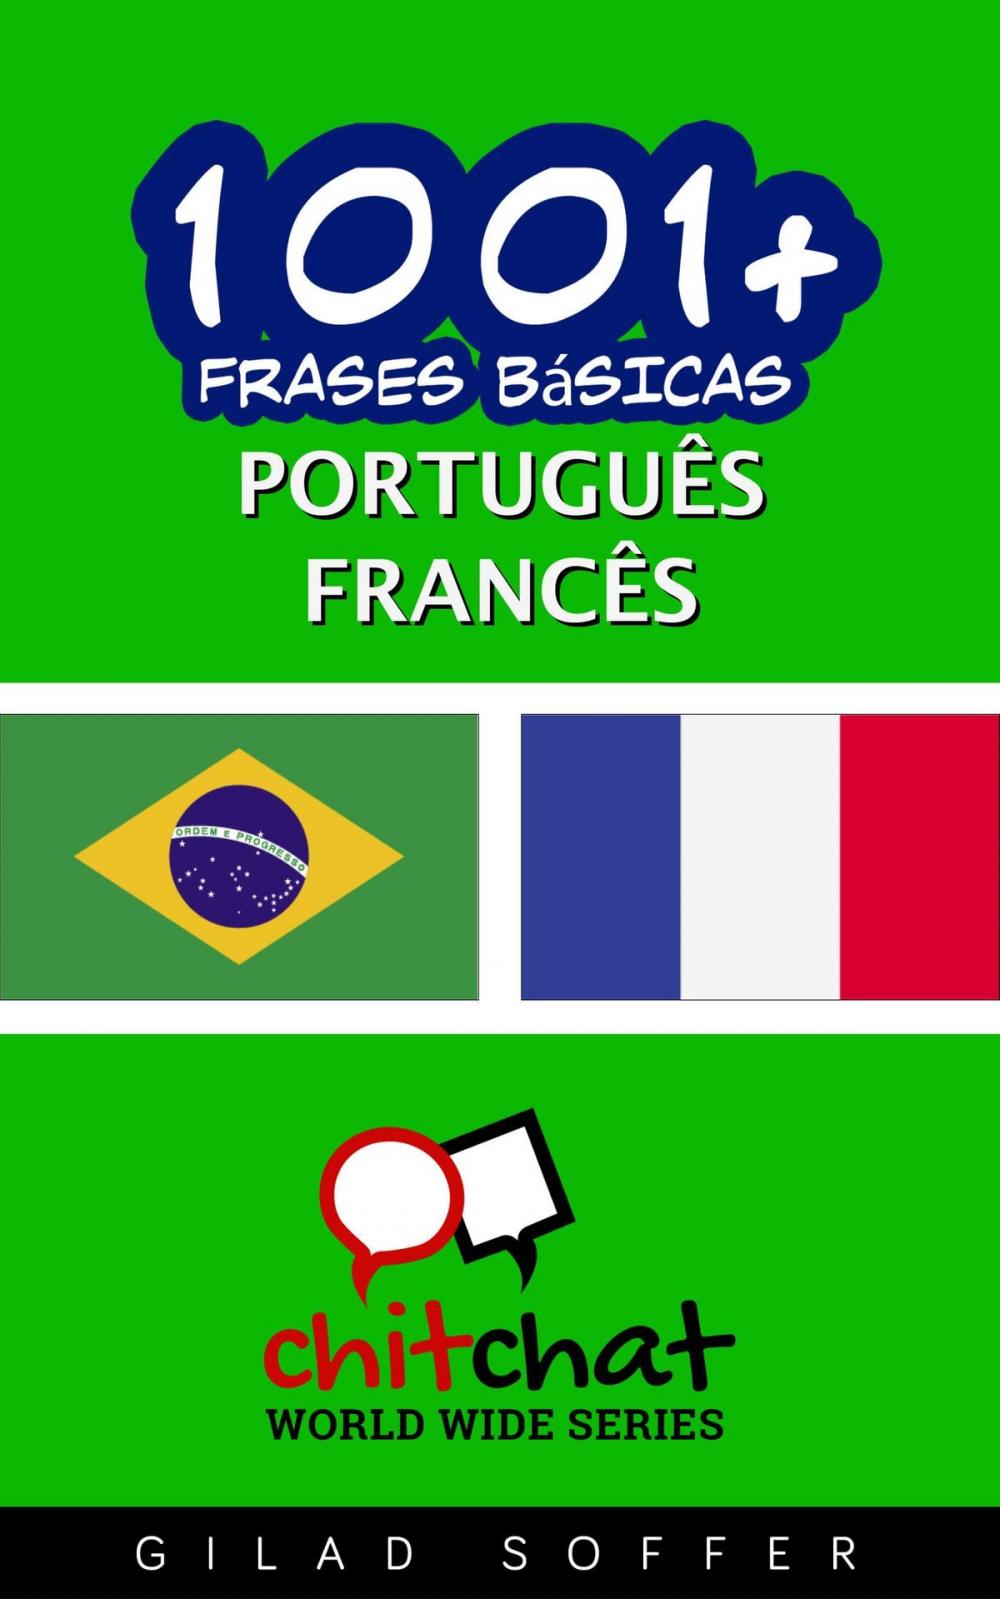 Big bigCover of 1001+ Frases Básicas Português - francês